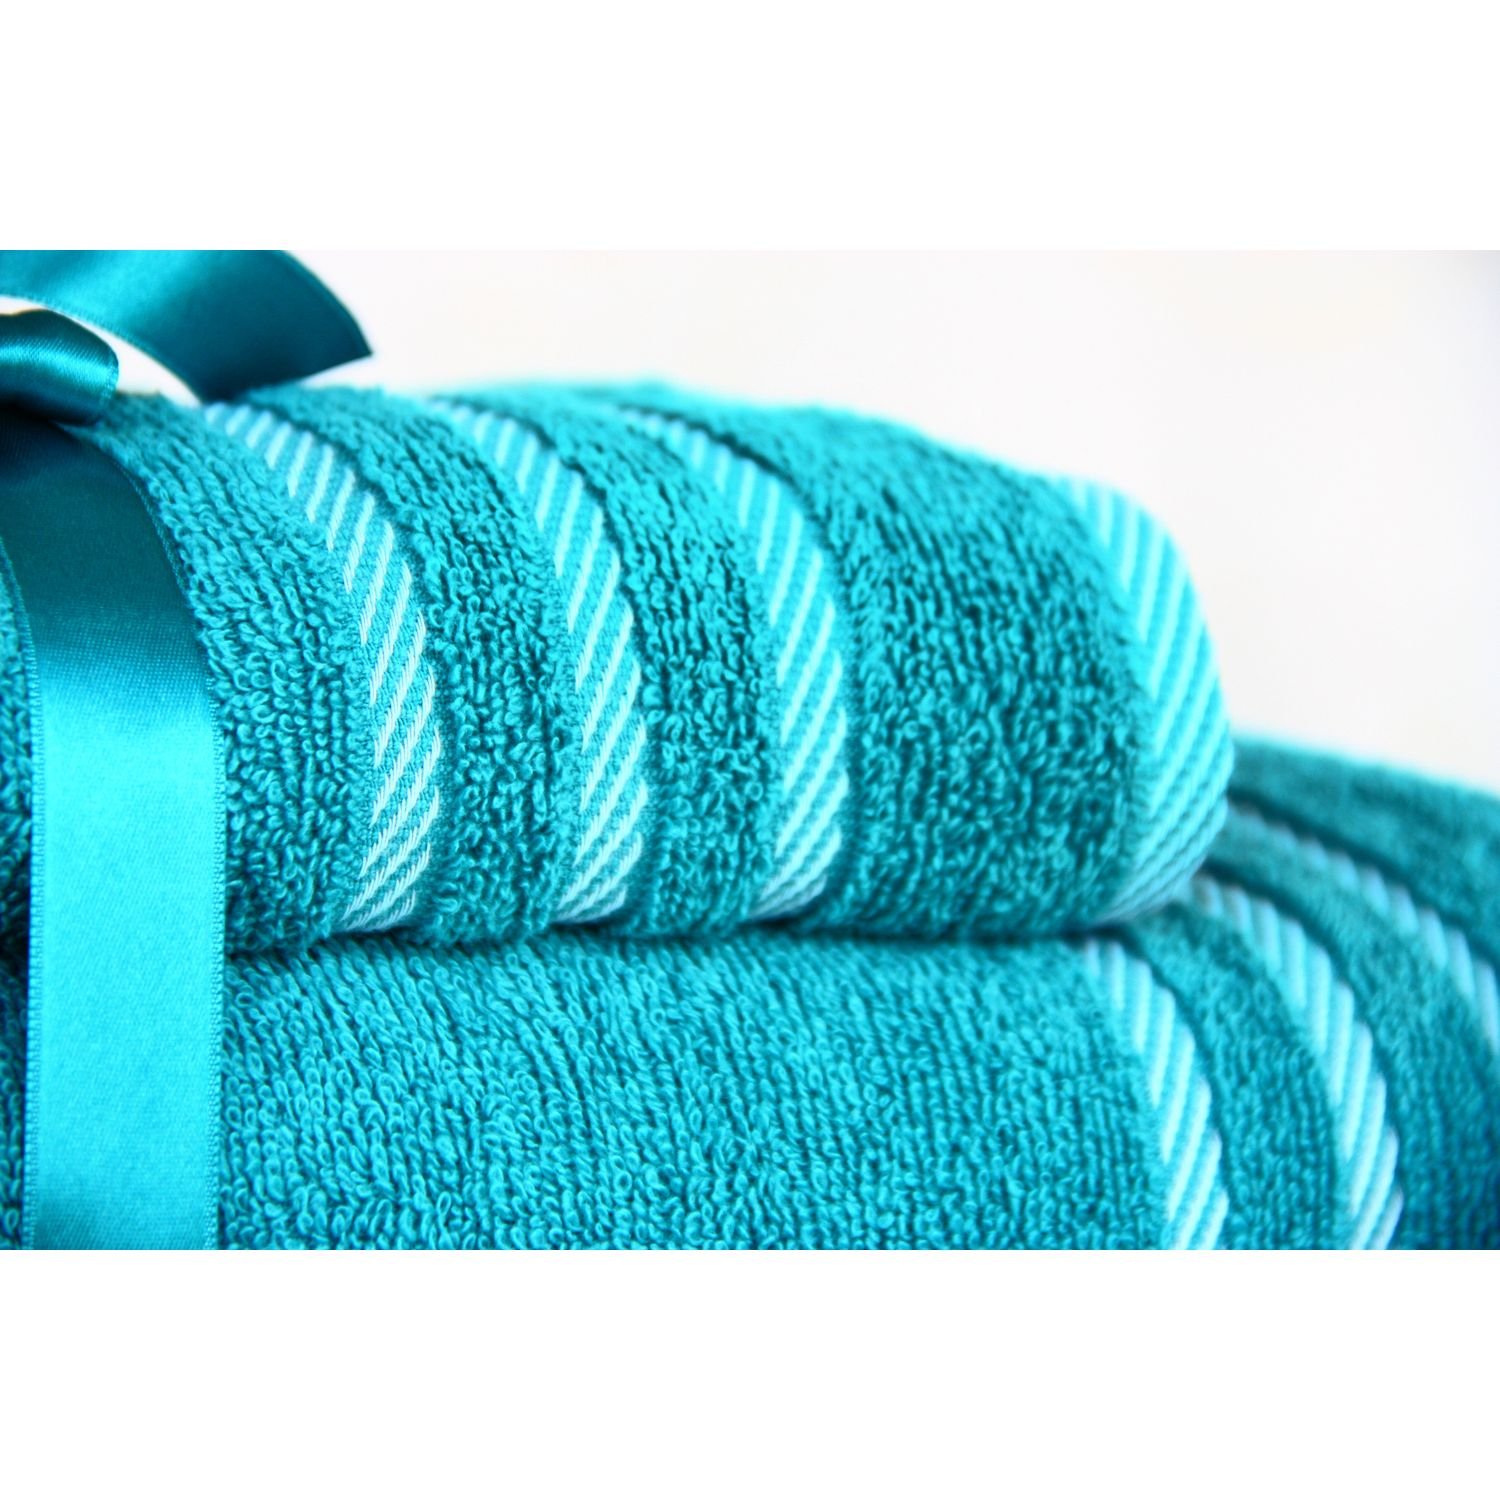 Набір рушників Izzihome Rubin Stripe2 turquoise, 50х90 см, 70х130 см, бірюзовий (604149) - фото 3